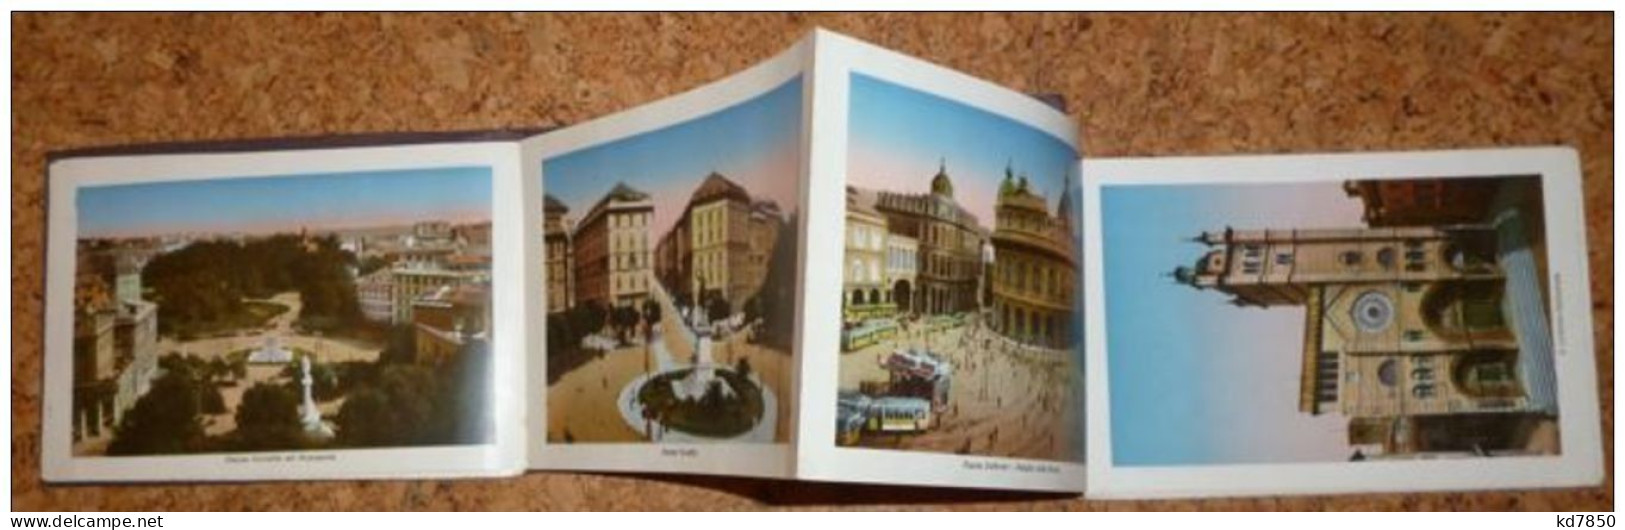 Ricordo Di Genova - Booklet - 25 Bilder - Genova (Genua)